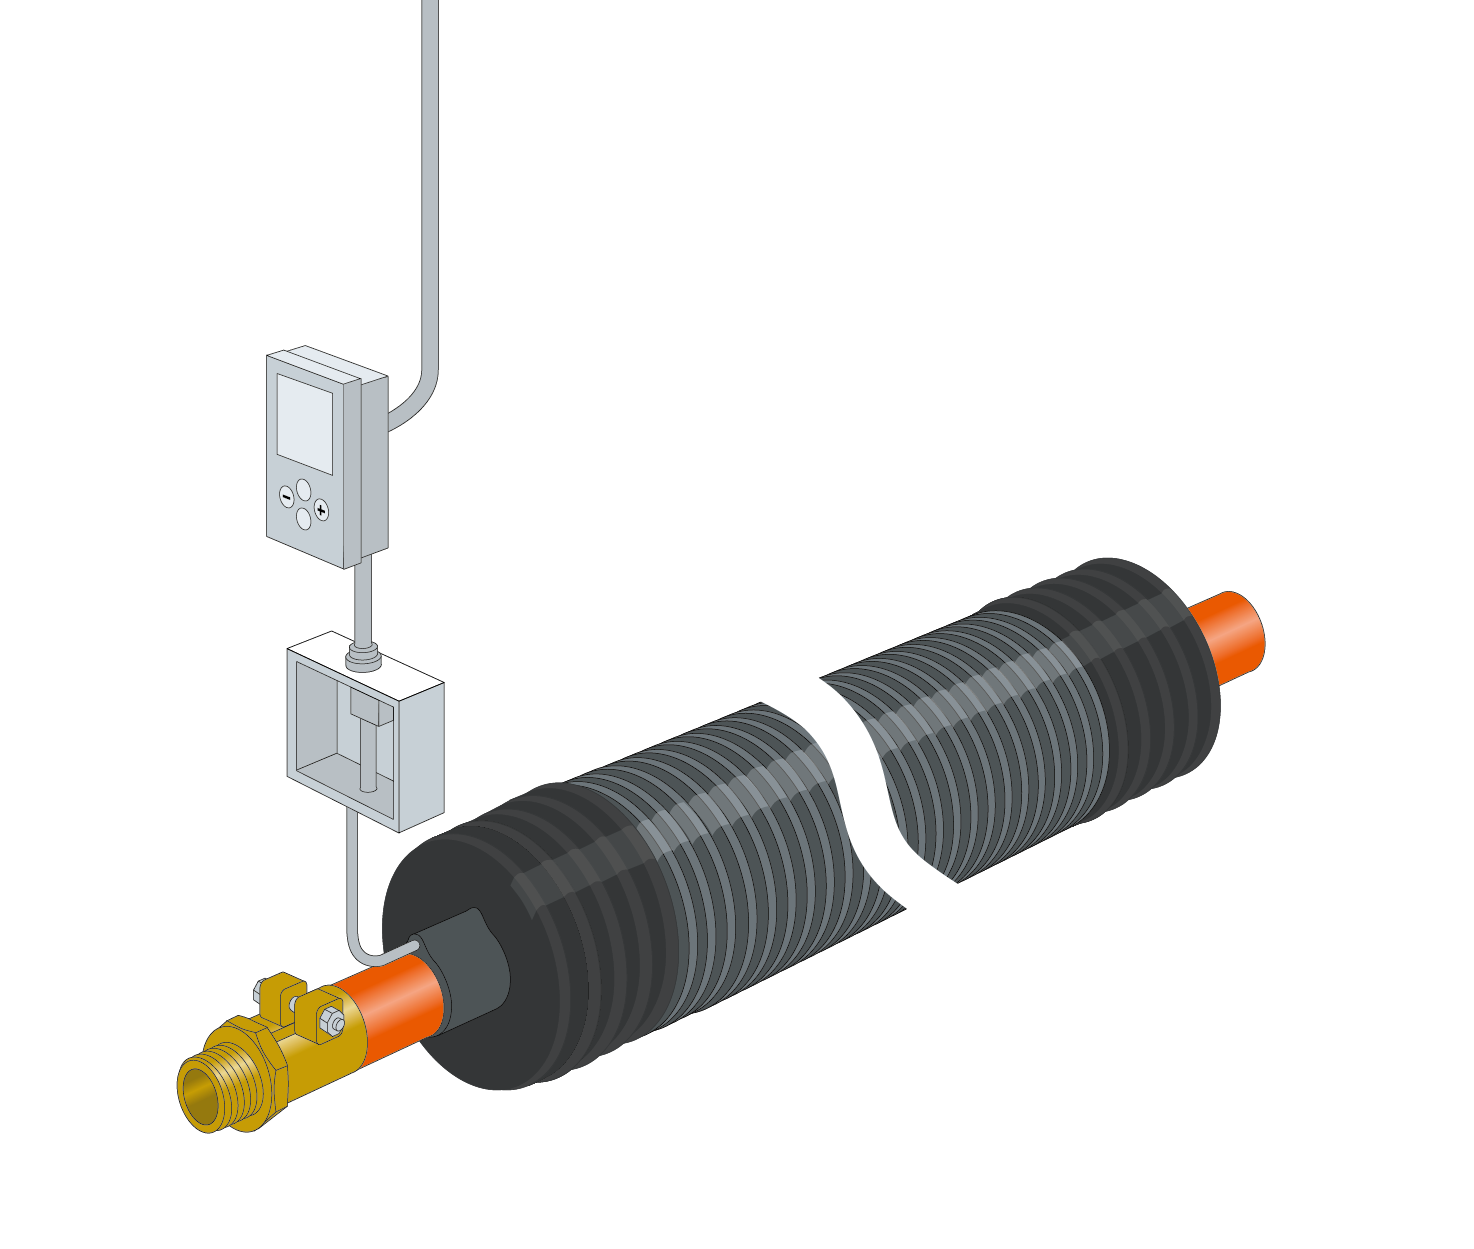 Câble chauffant antigel de 4 m + disjoncteur FI + ruban adhésif en